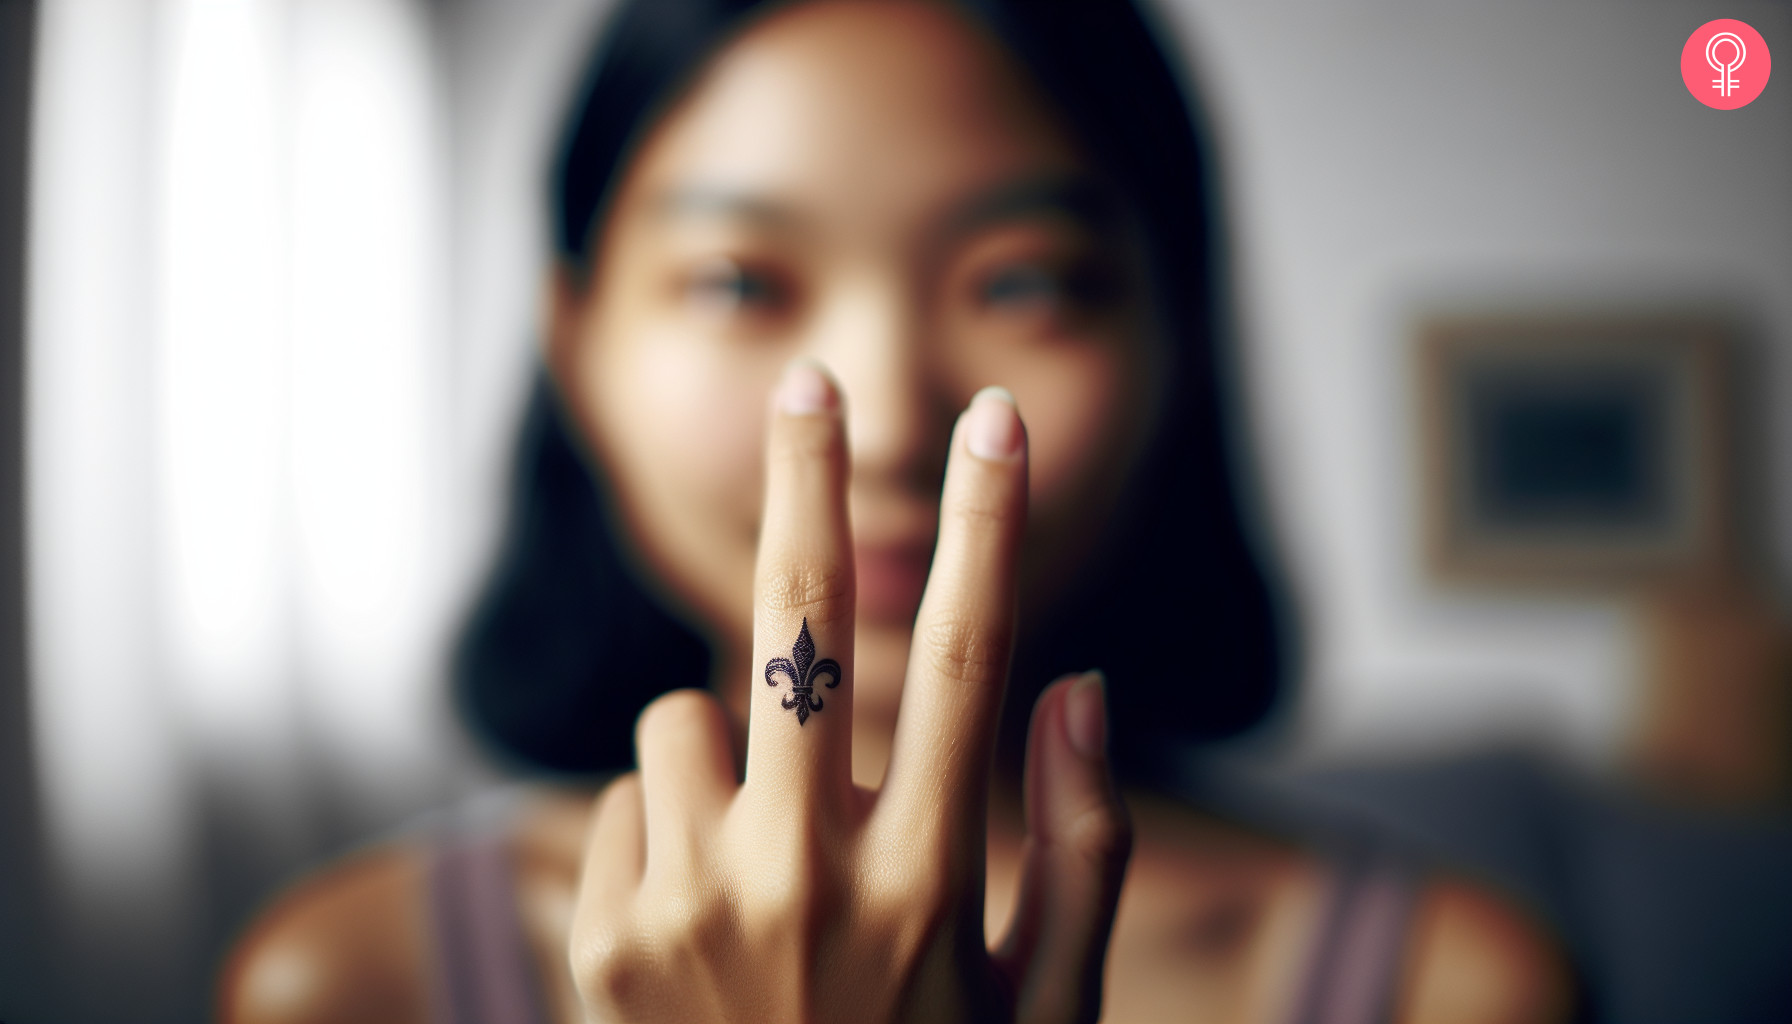 A fleur de lis finger tattoo